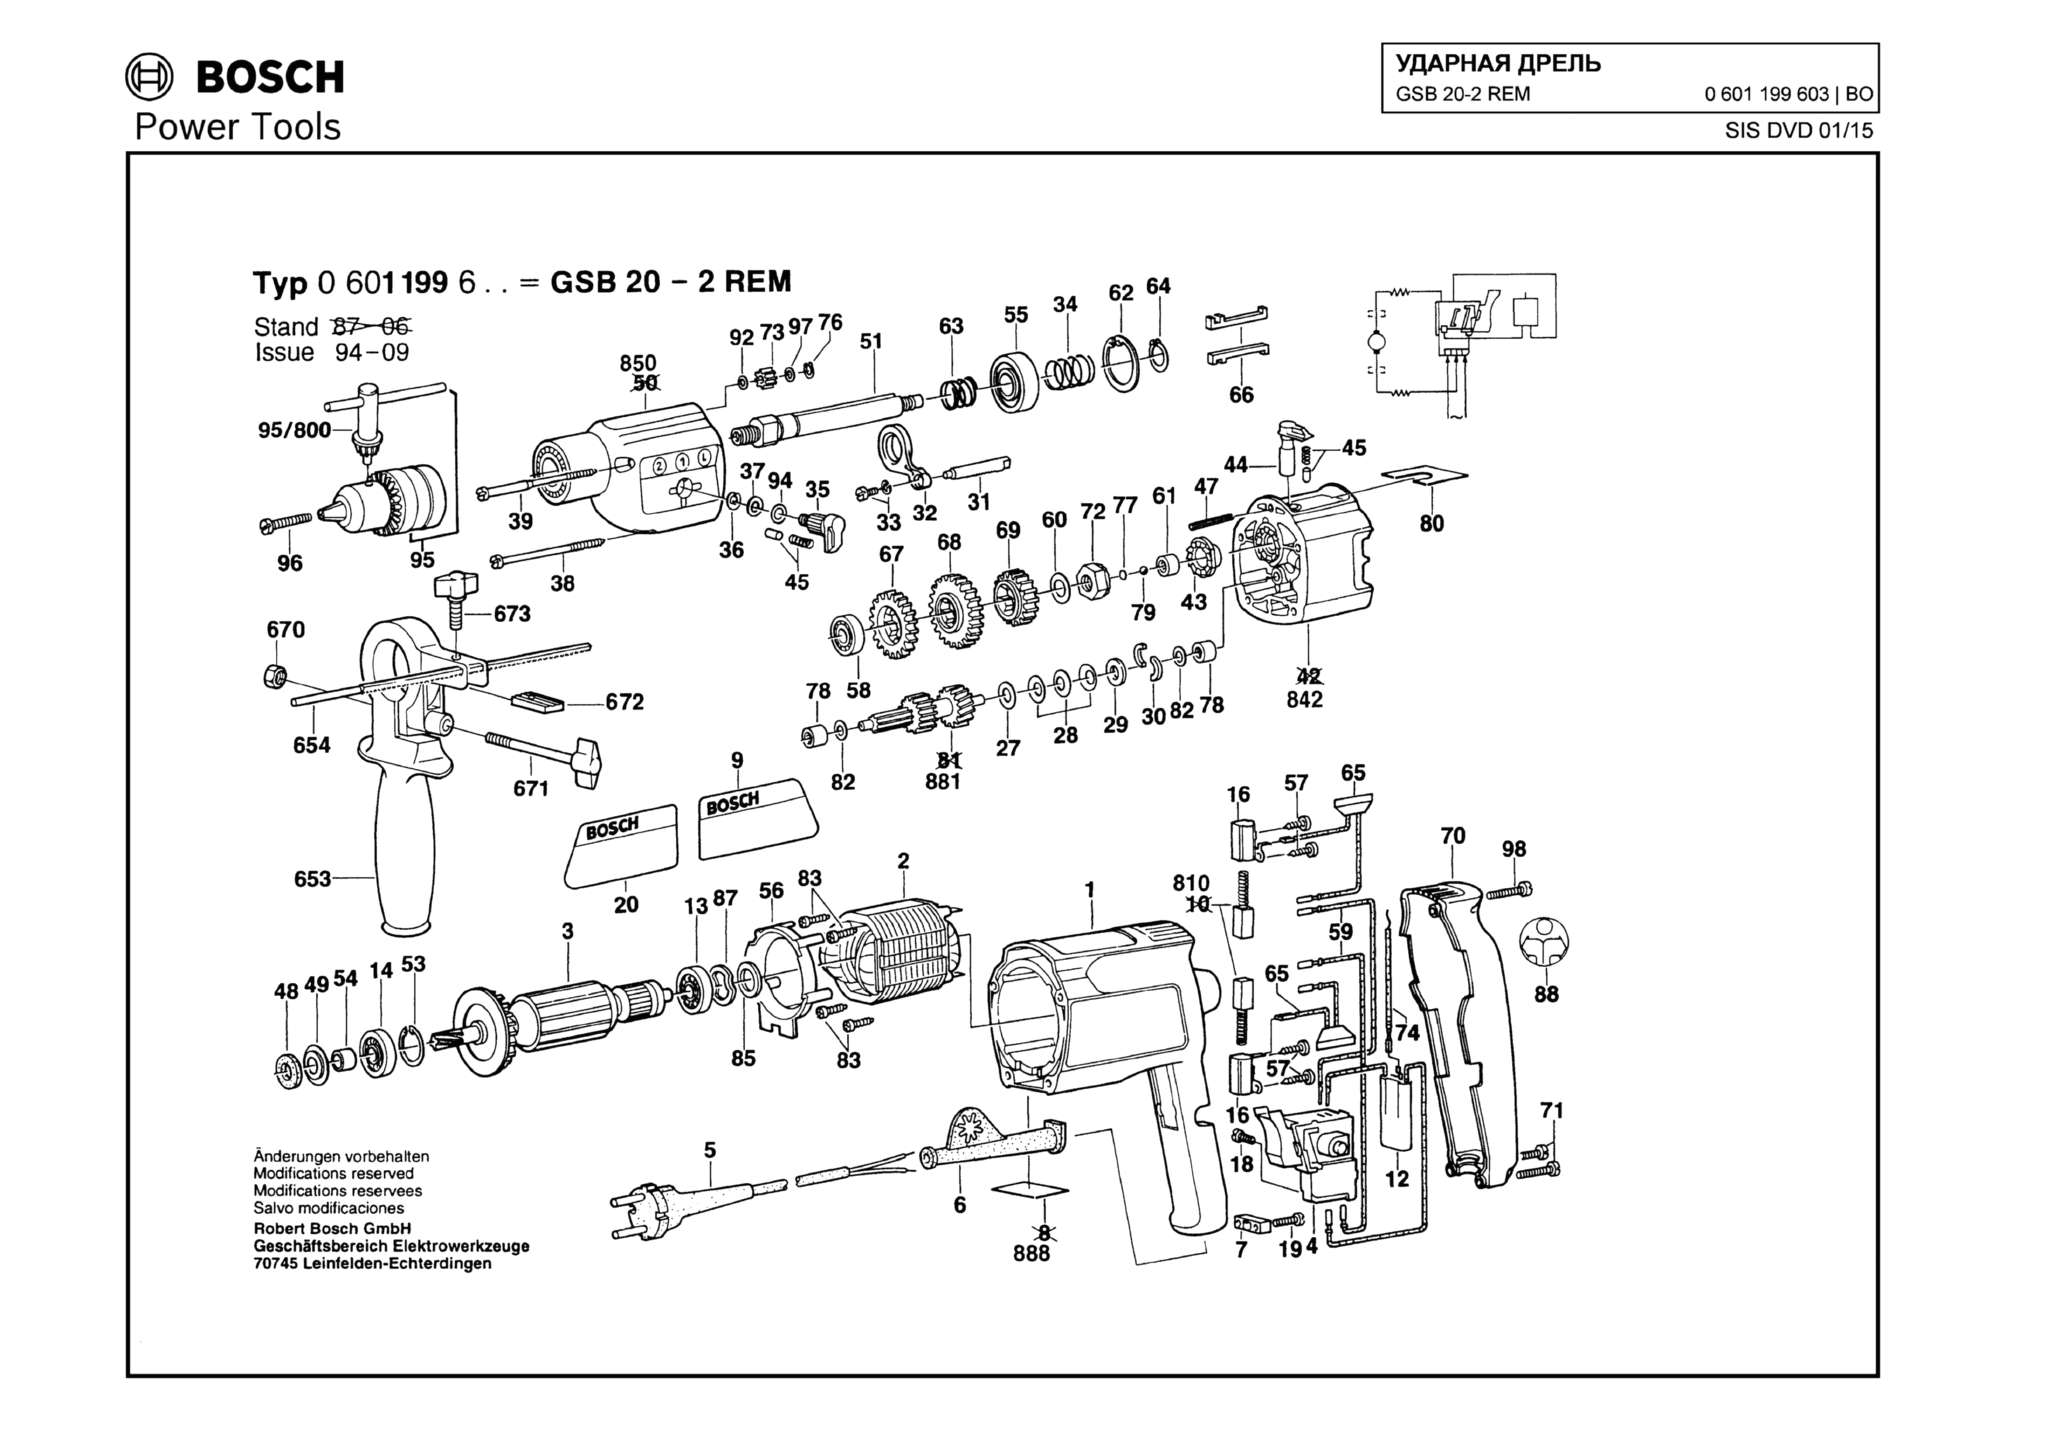 Запчасти, схема и деталировка Bosch GSB 20-2 REM (ТИП 0601199603)